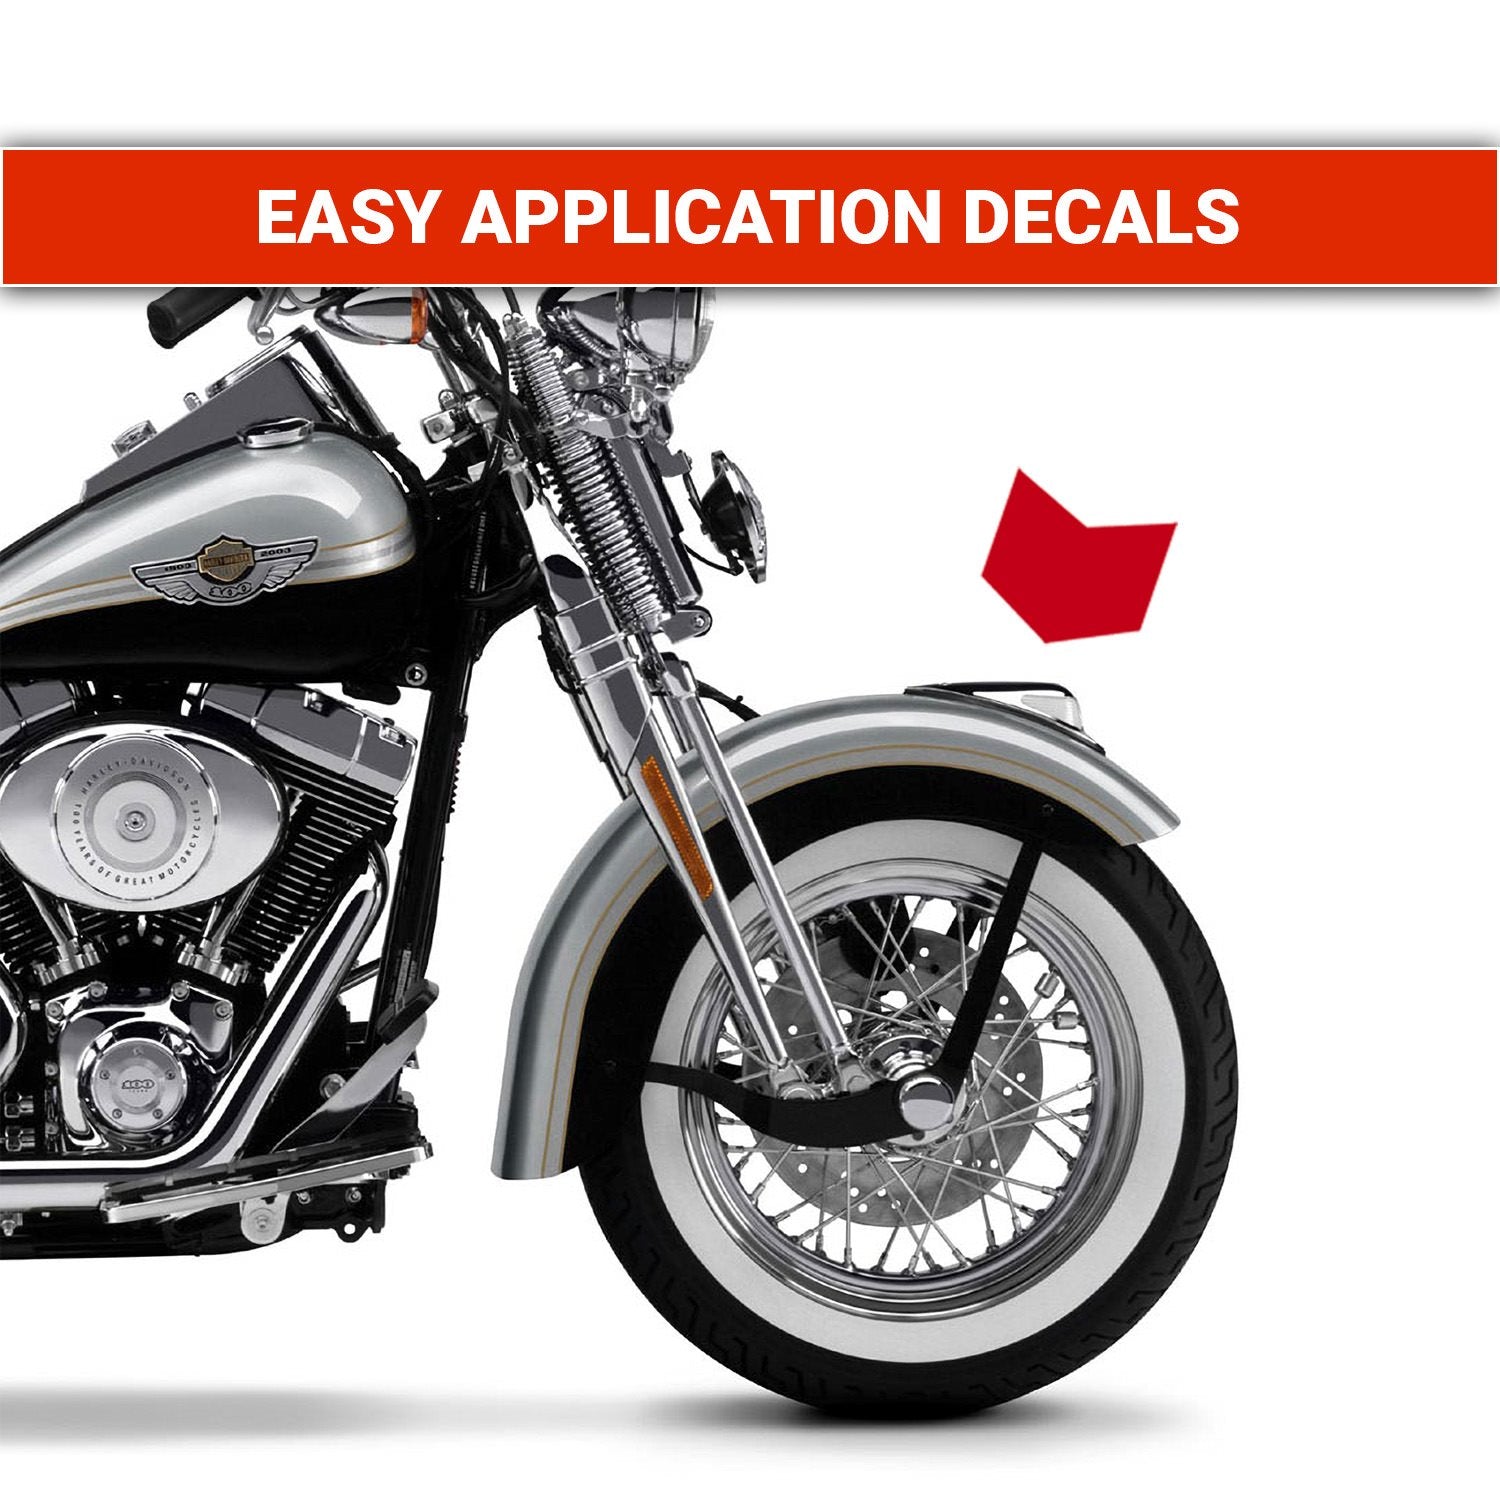 Harley-Davidson Anniversary springer softail decals